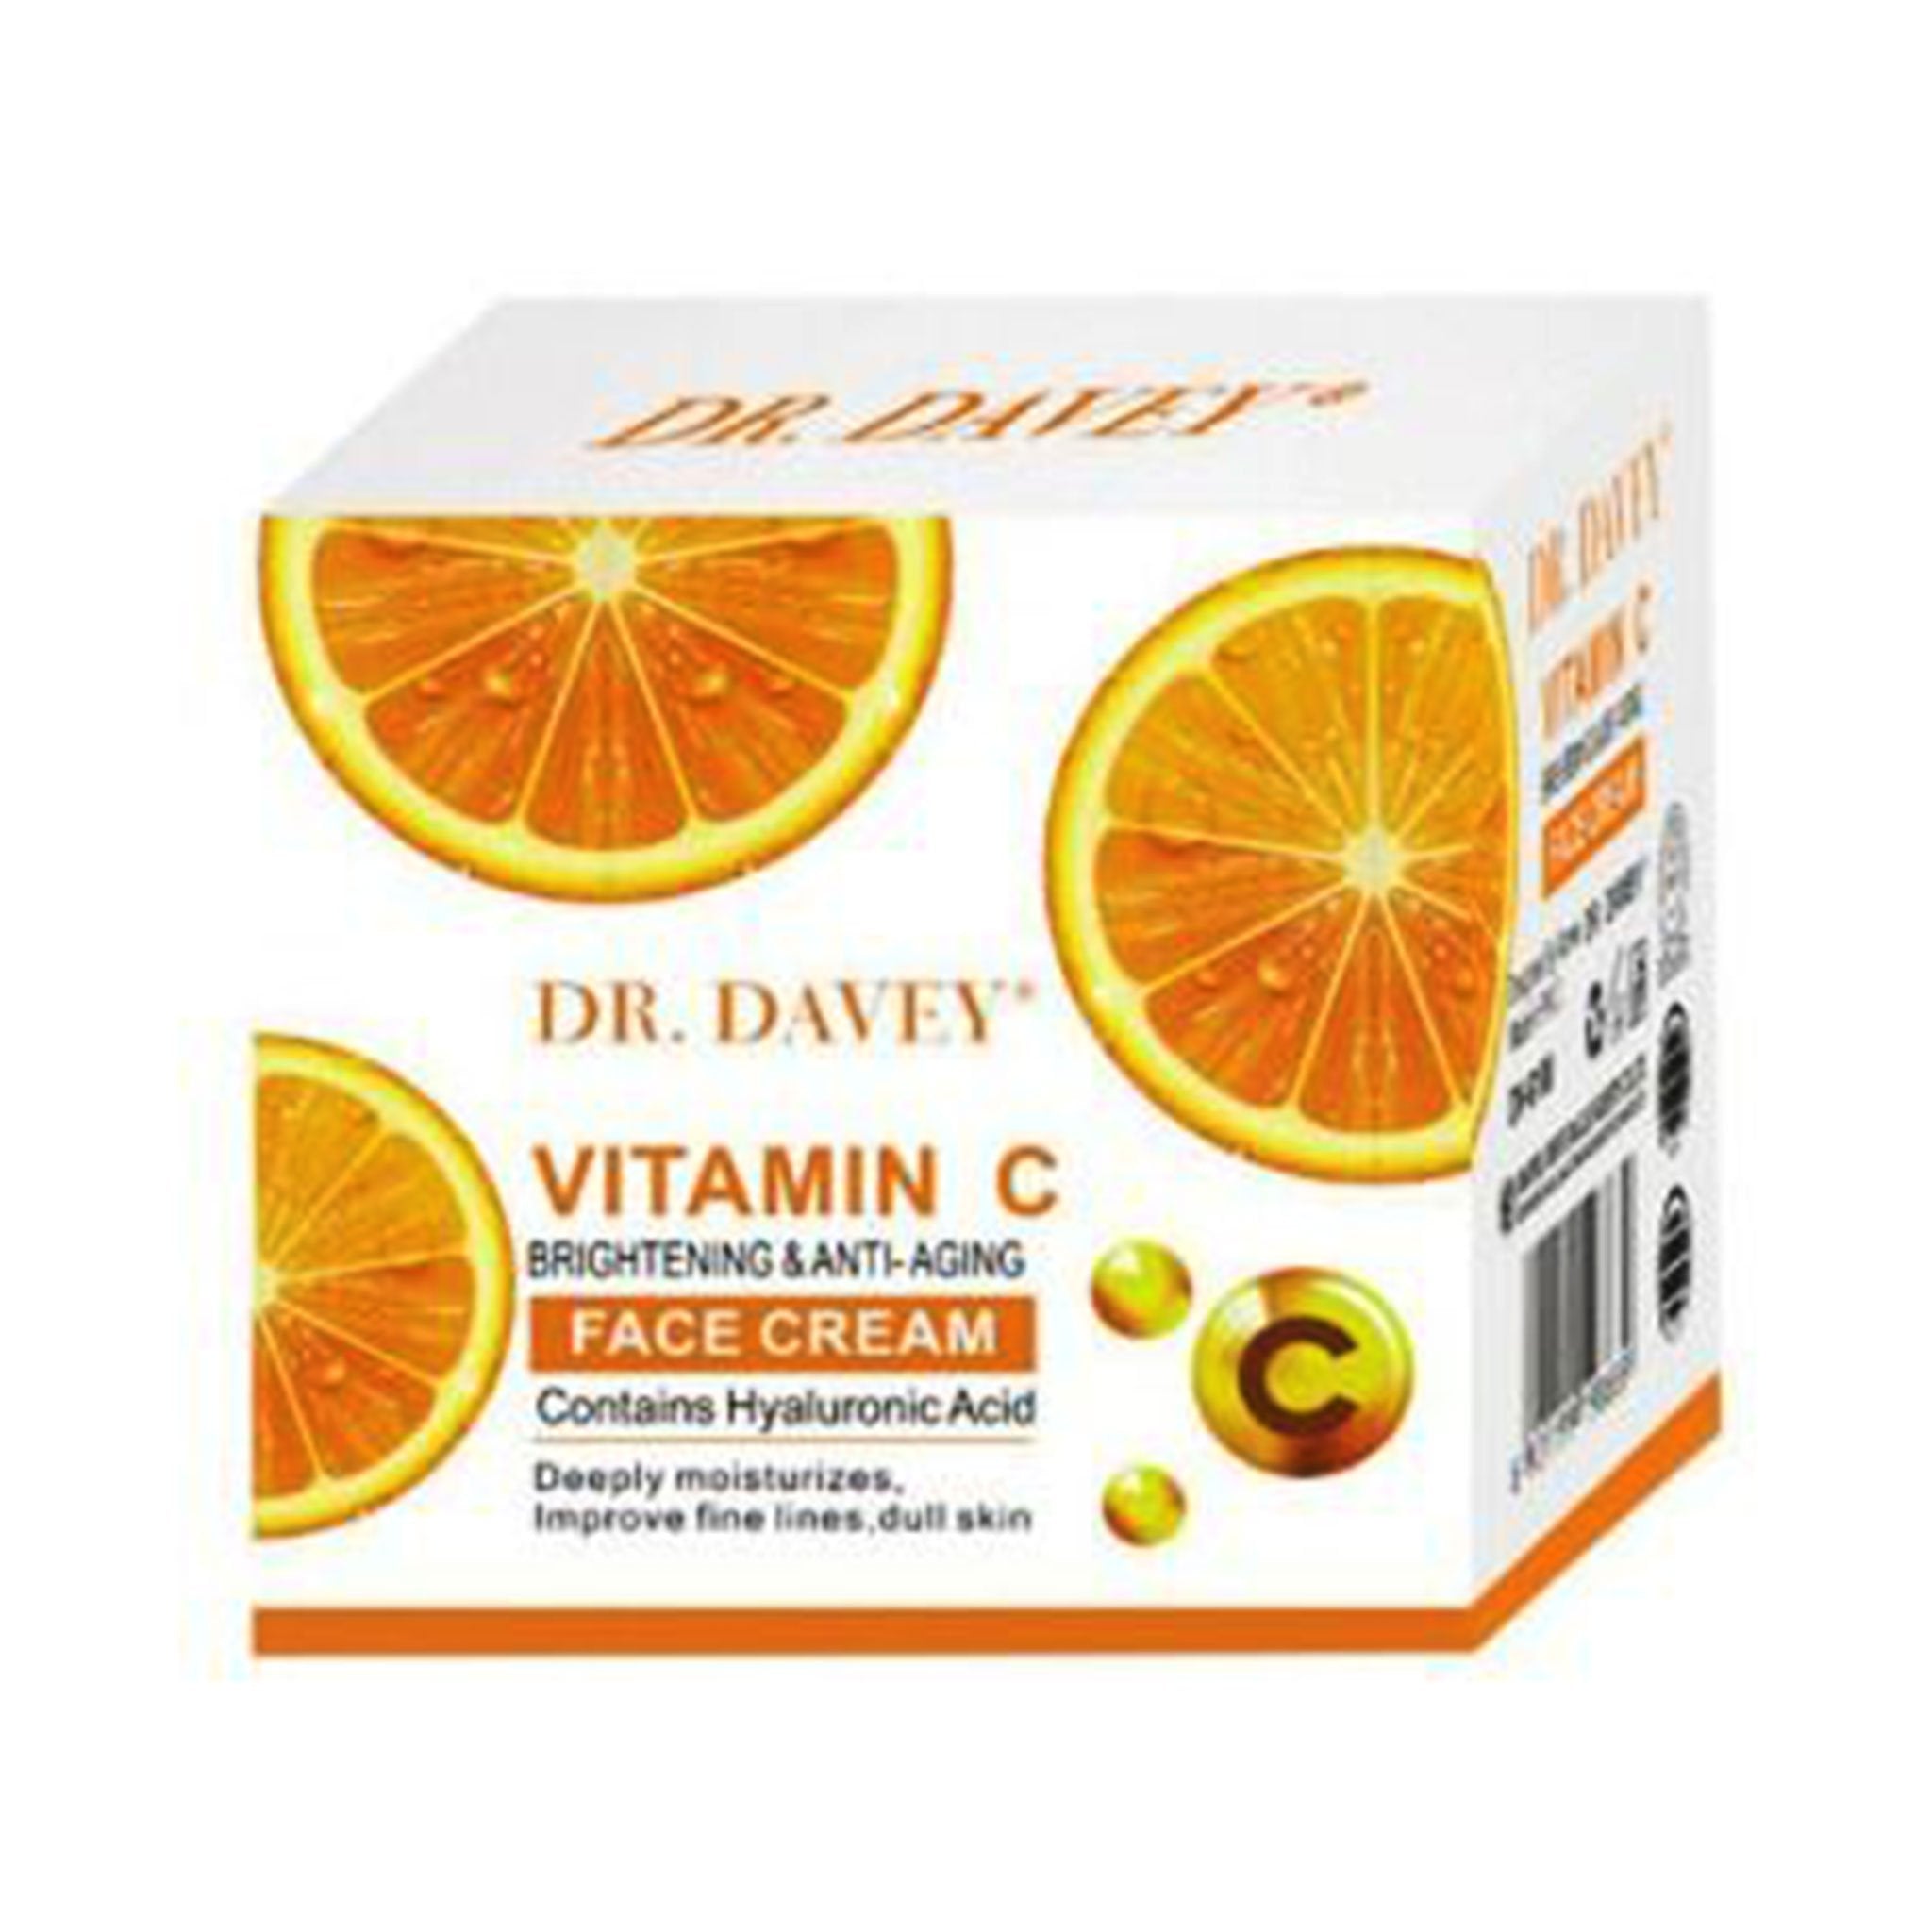 Dr Davey Vitamin C Face Cream 50g